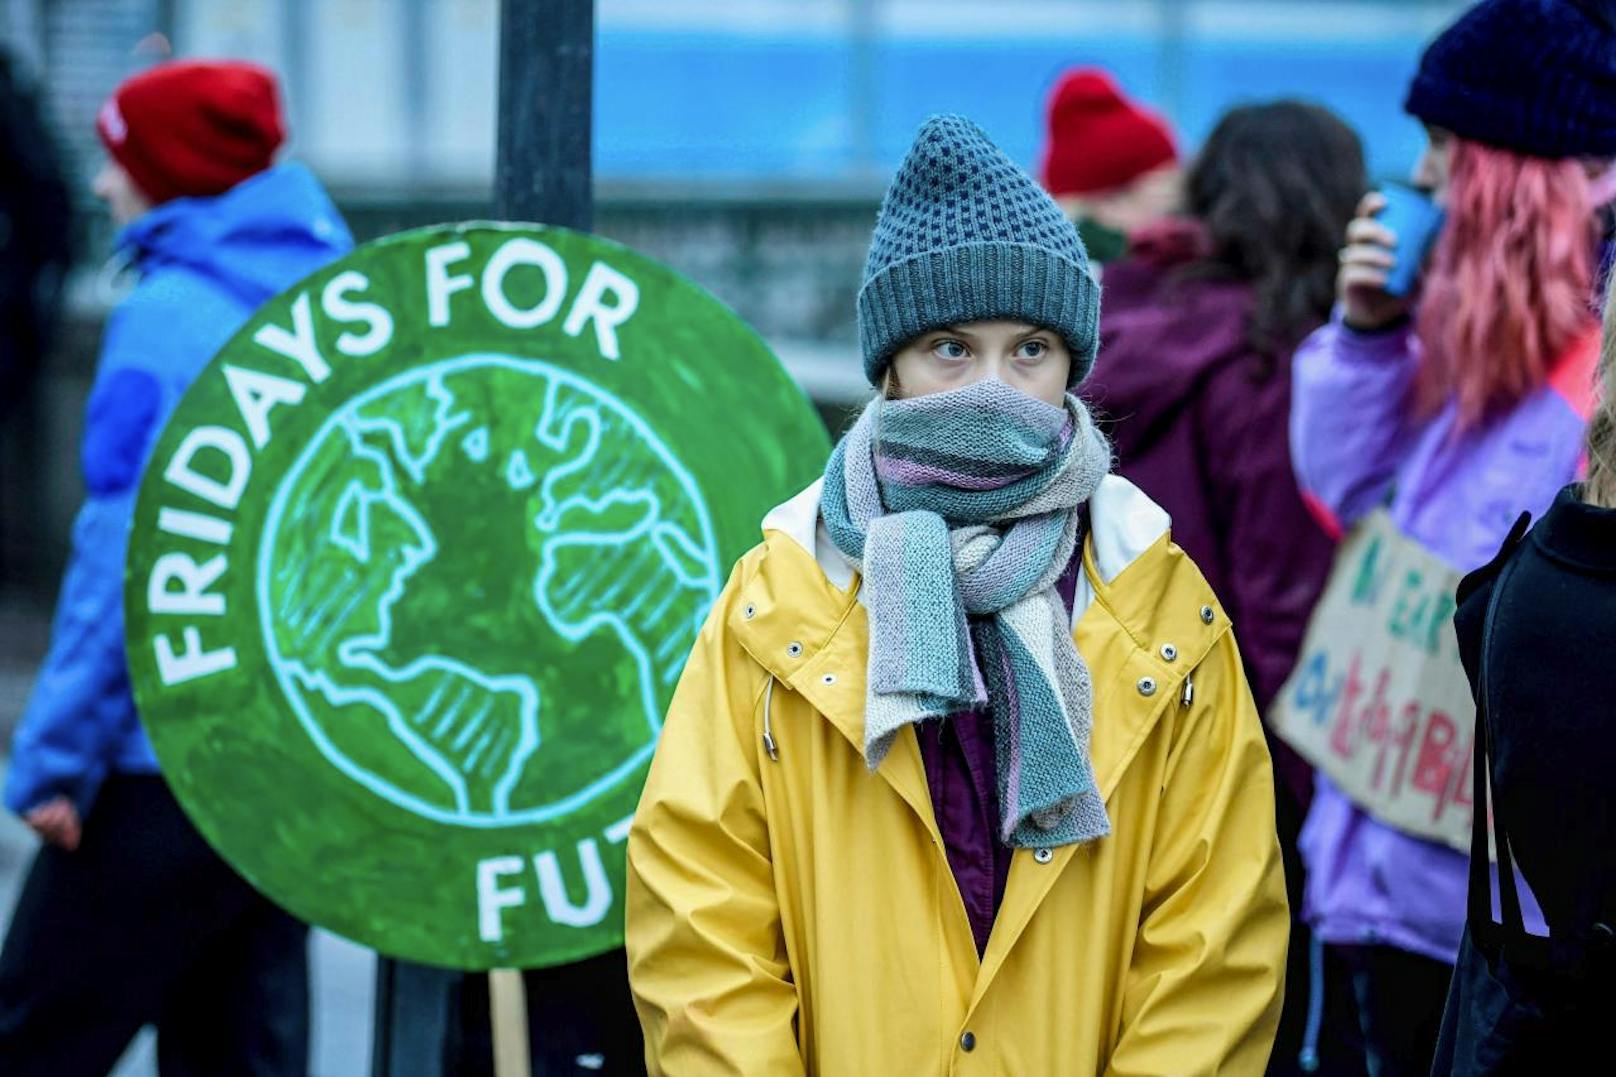 Unter dem Motto "Unite behind science" hat eine Gruppe von Umweltschützern und Wissenschaftlern am Montag in Davos eine neue Kampagne für griffigere Maßnahmen gegen den Klimawandel lanciert.